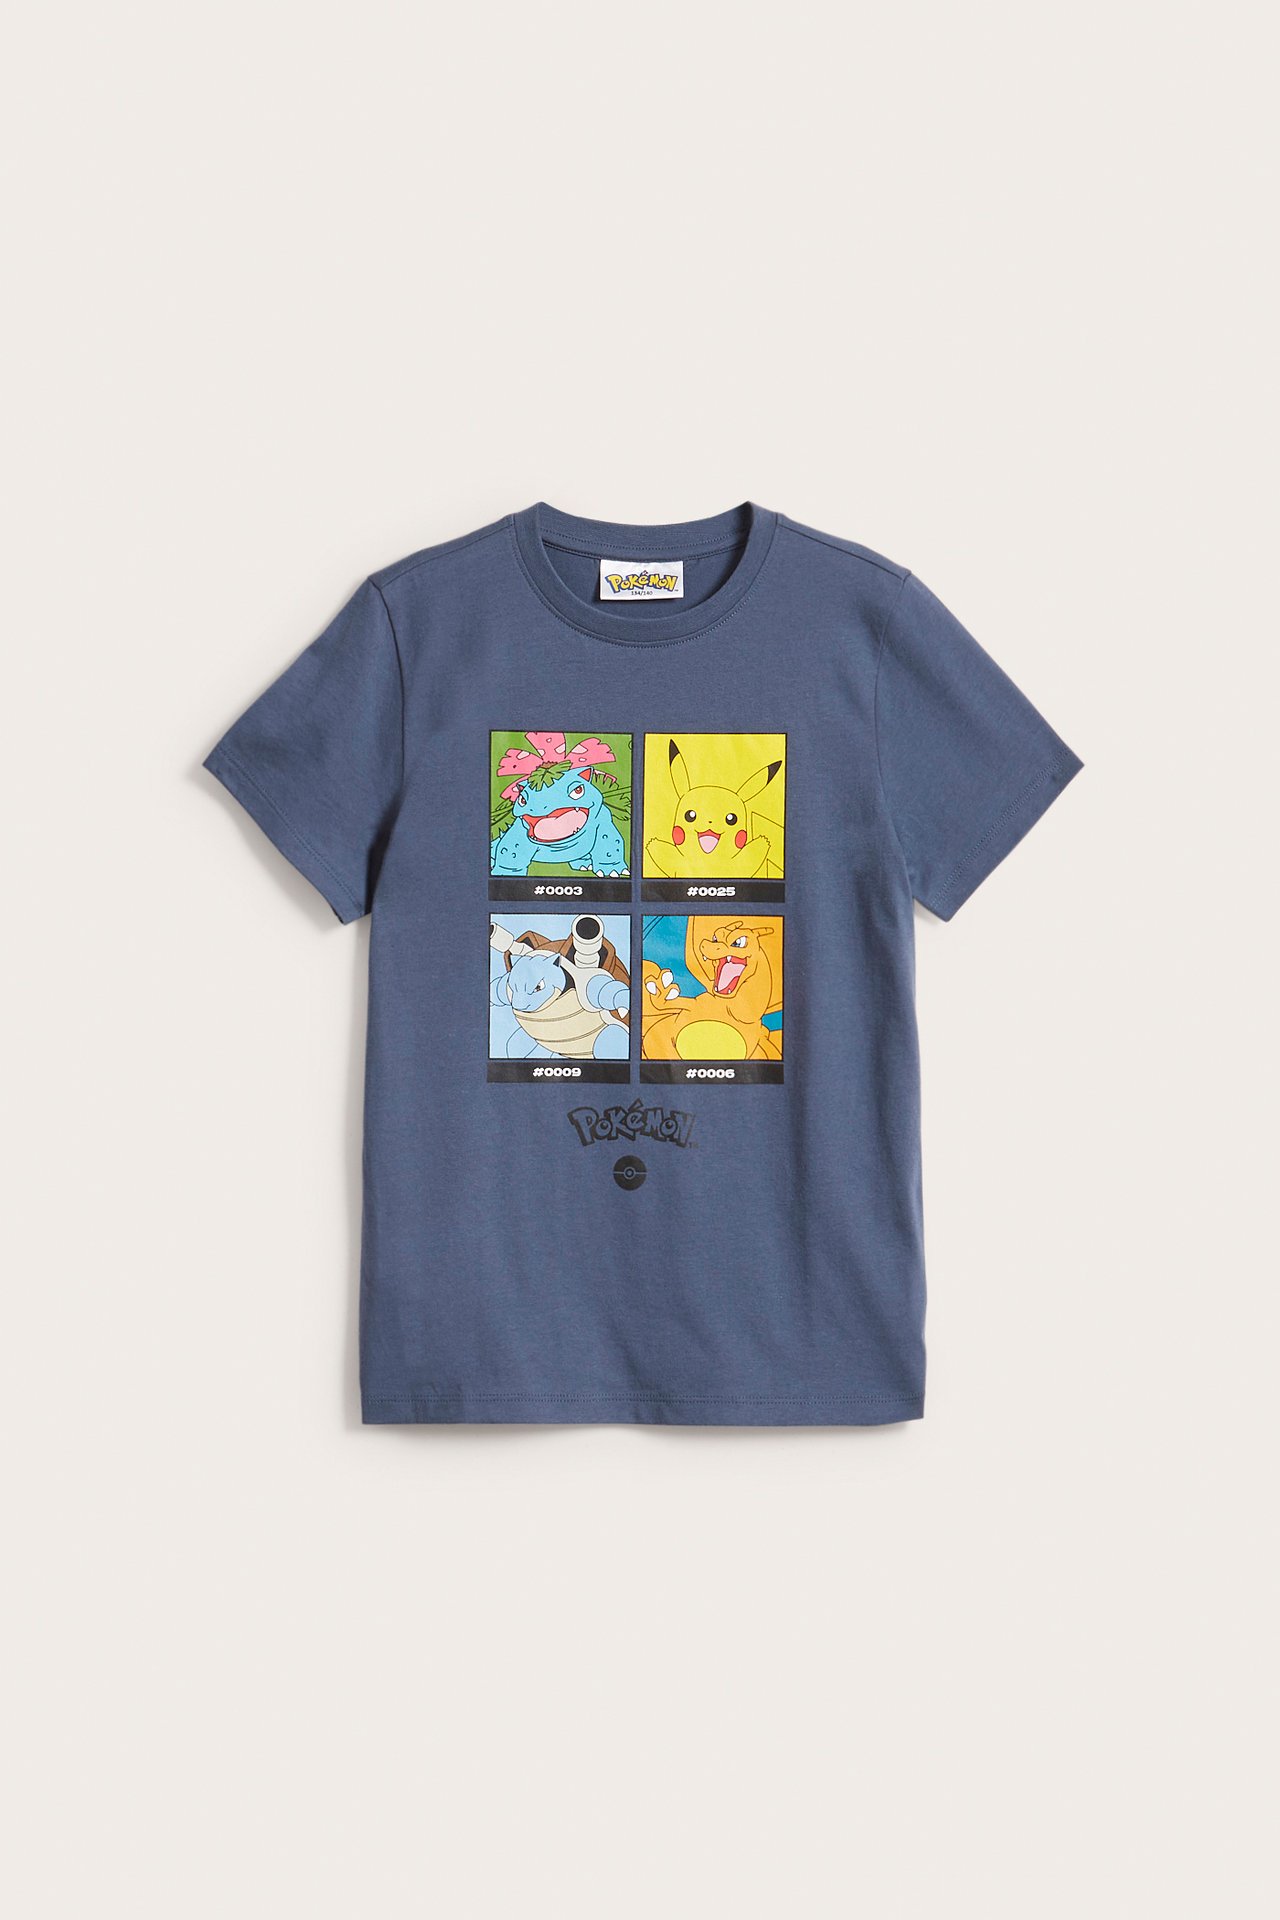 T-paita, Pokémon - Sininen - 2